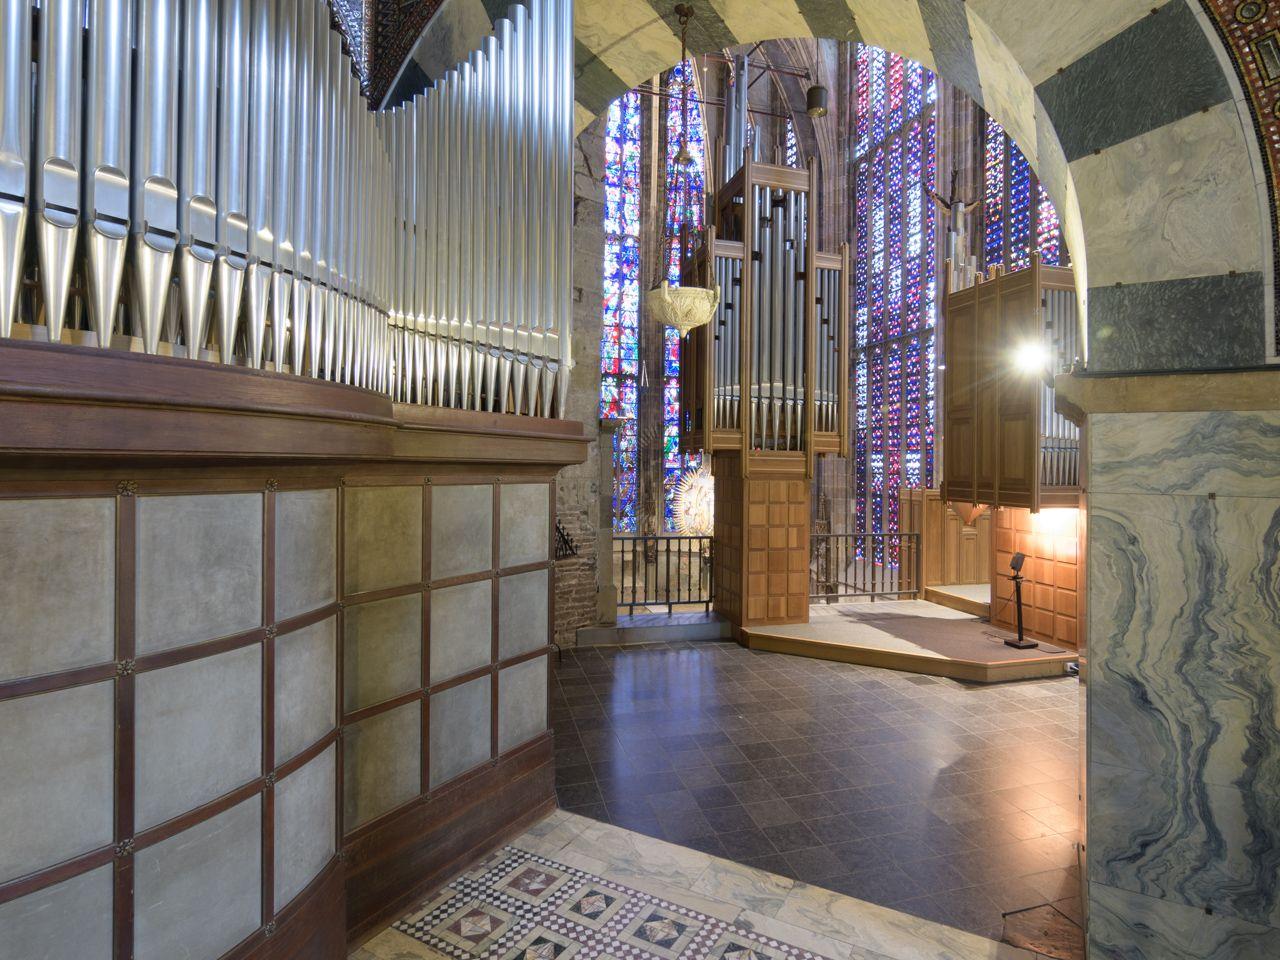 Orgel for KIDS - Wir bauen eine Orgel! 6. August 2022 (c) Bistum Aachen